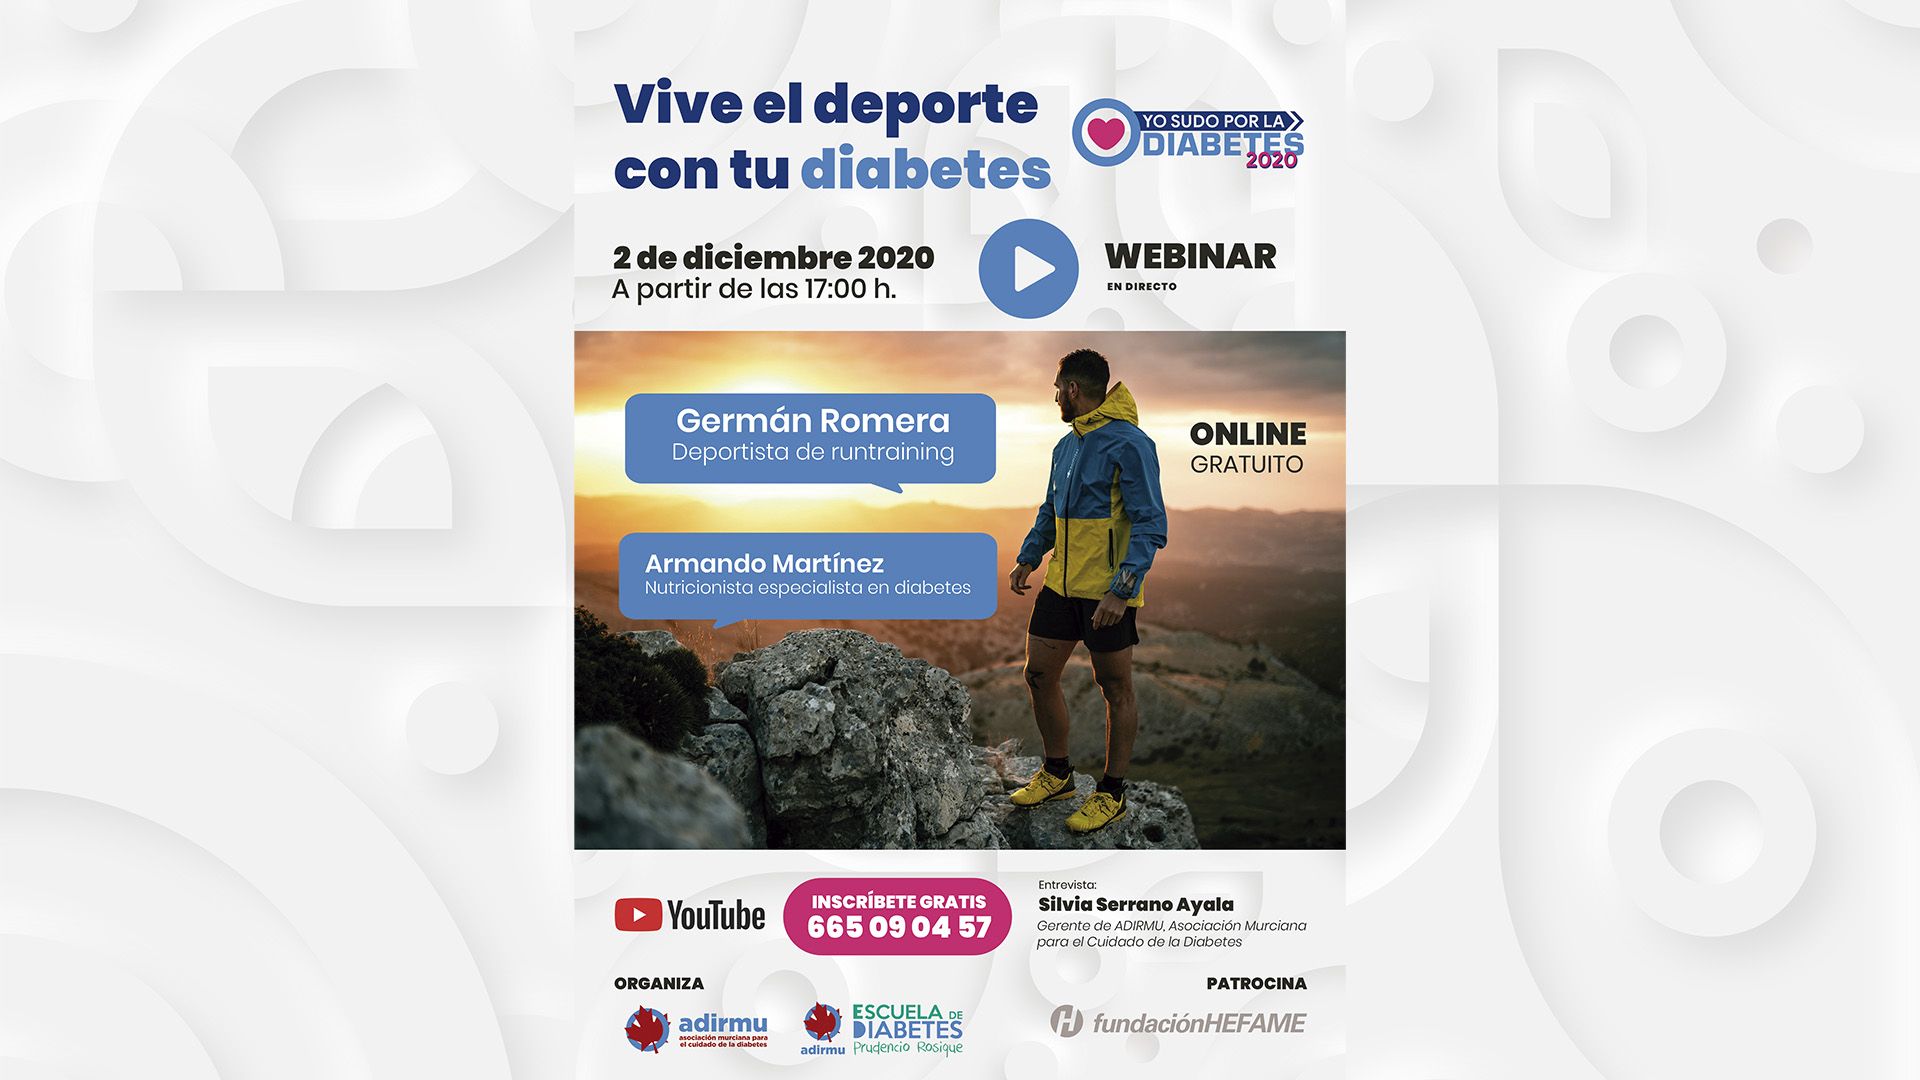 Webinar “Vive el deporte con tu diabetes”